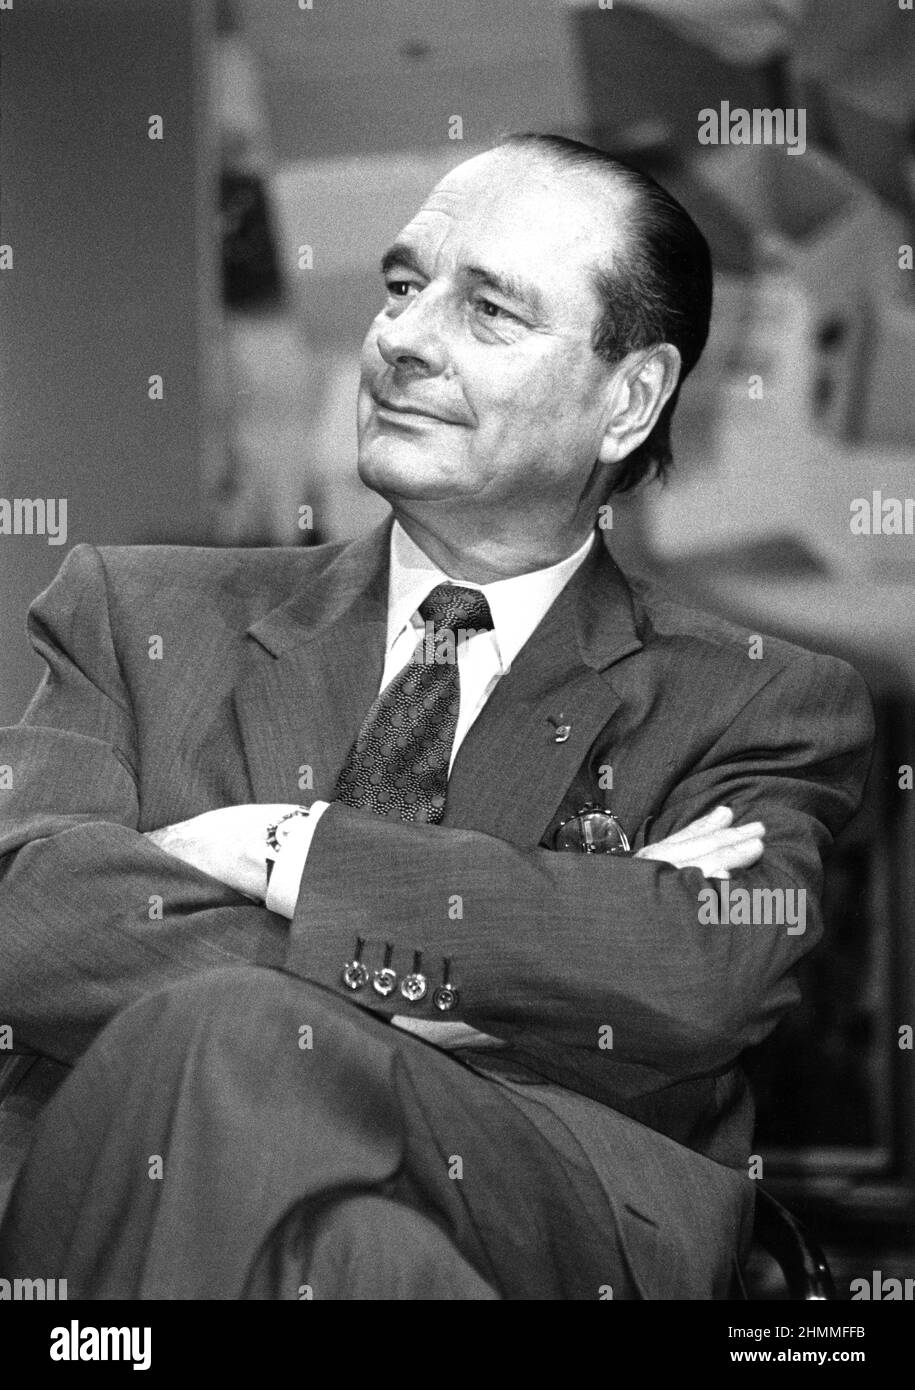 Jacques Chirac, député du RPR (parti politique de centre-droit), maire de Paris et candidat à l'élection présidentielle de 1995, ici lors de sa campagne électorale à Reims (Nord-est de la France) le 1995/04/13 Banque D'Images